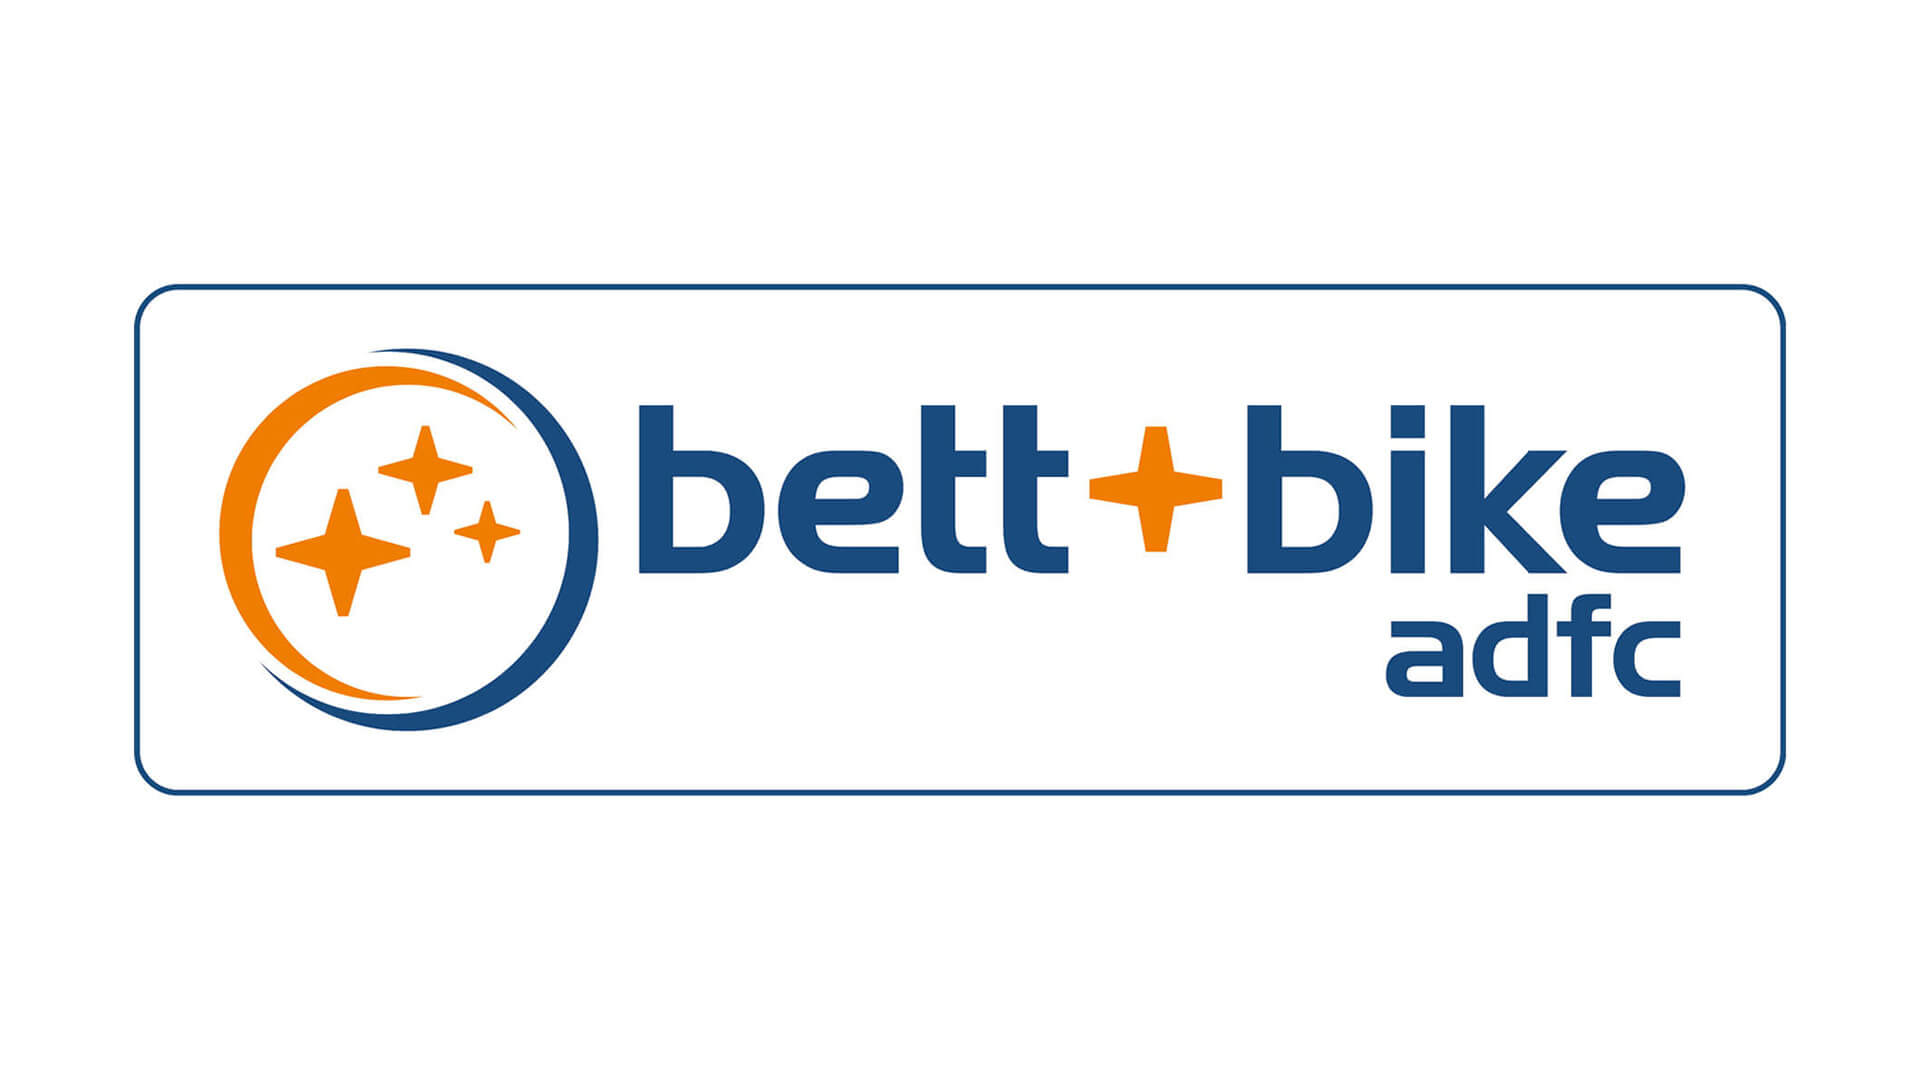 bett + bike